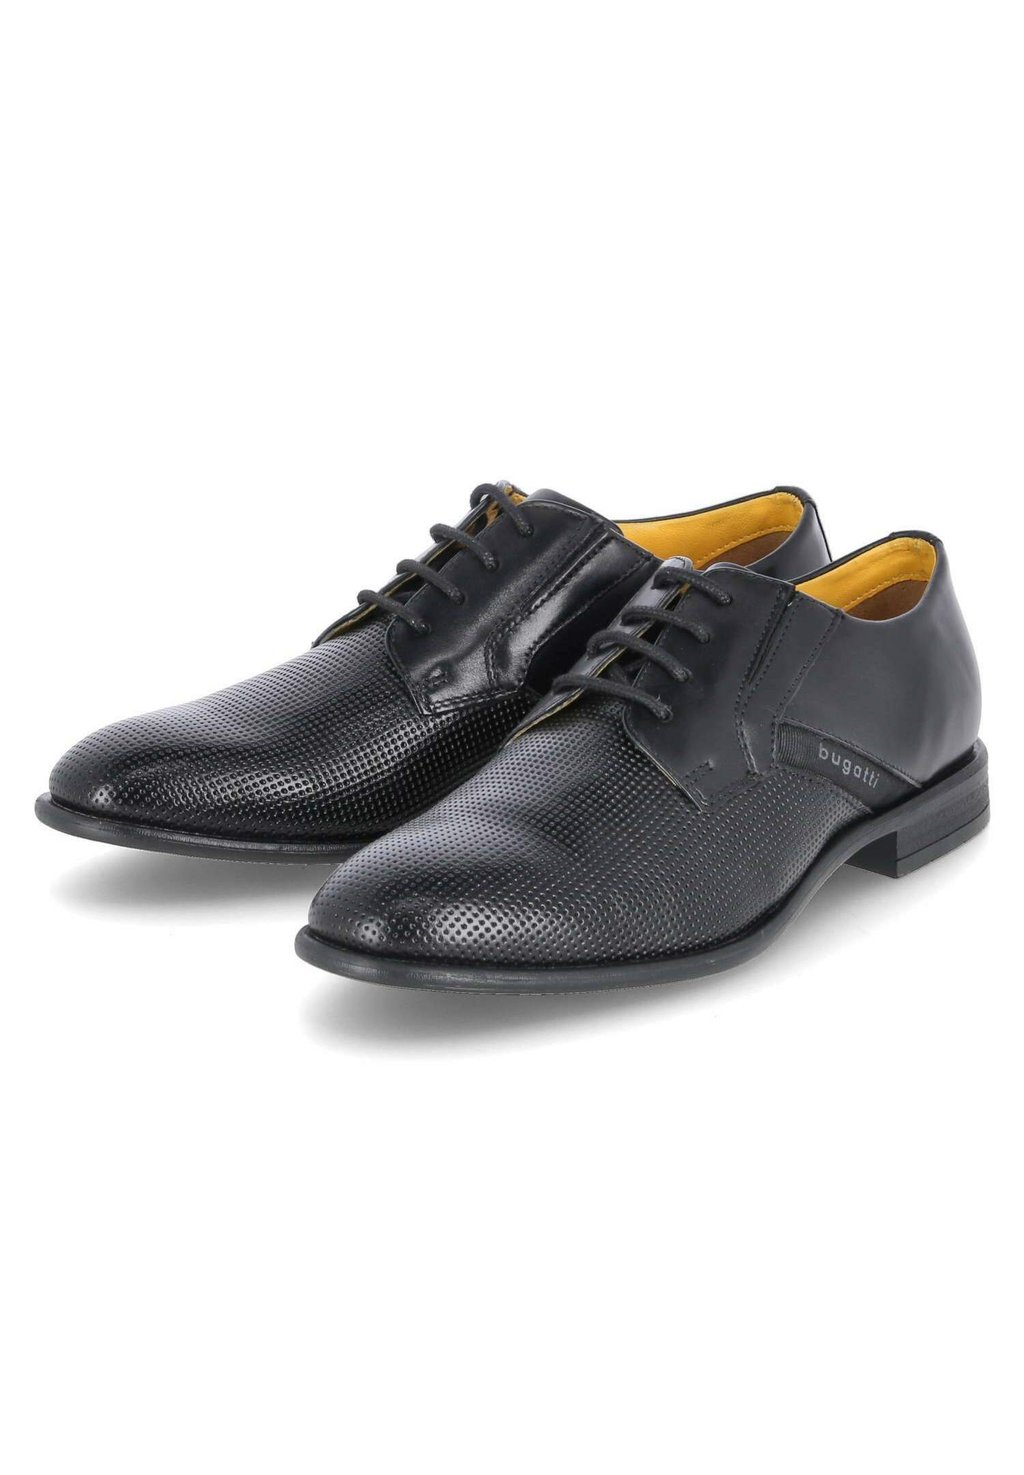 Деловые туфли на шнуровке bugatti, цвет schwarz деловые туфли на шнуровке bugatti цвет black